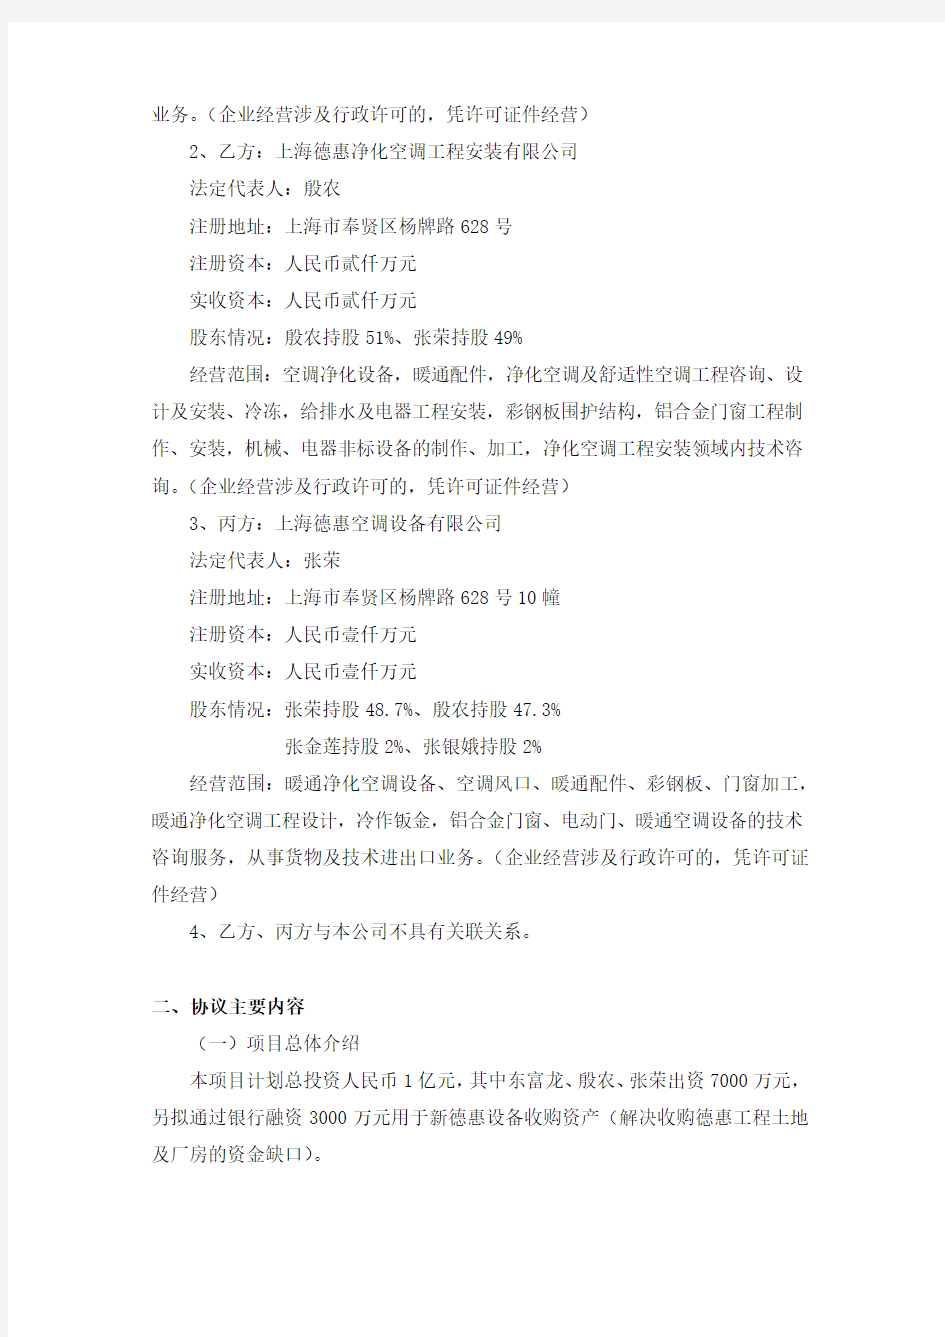 上海东富龙科技股份有限公司 关于收购德惠资产进展的公告